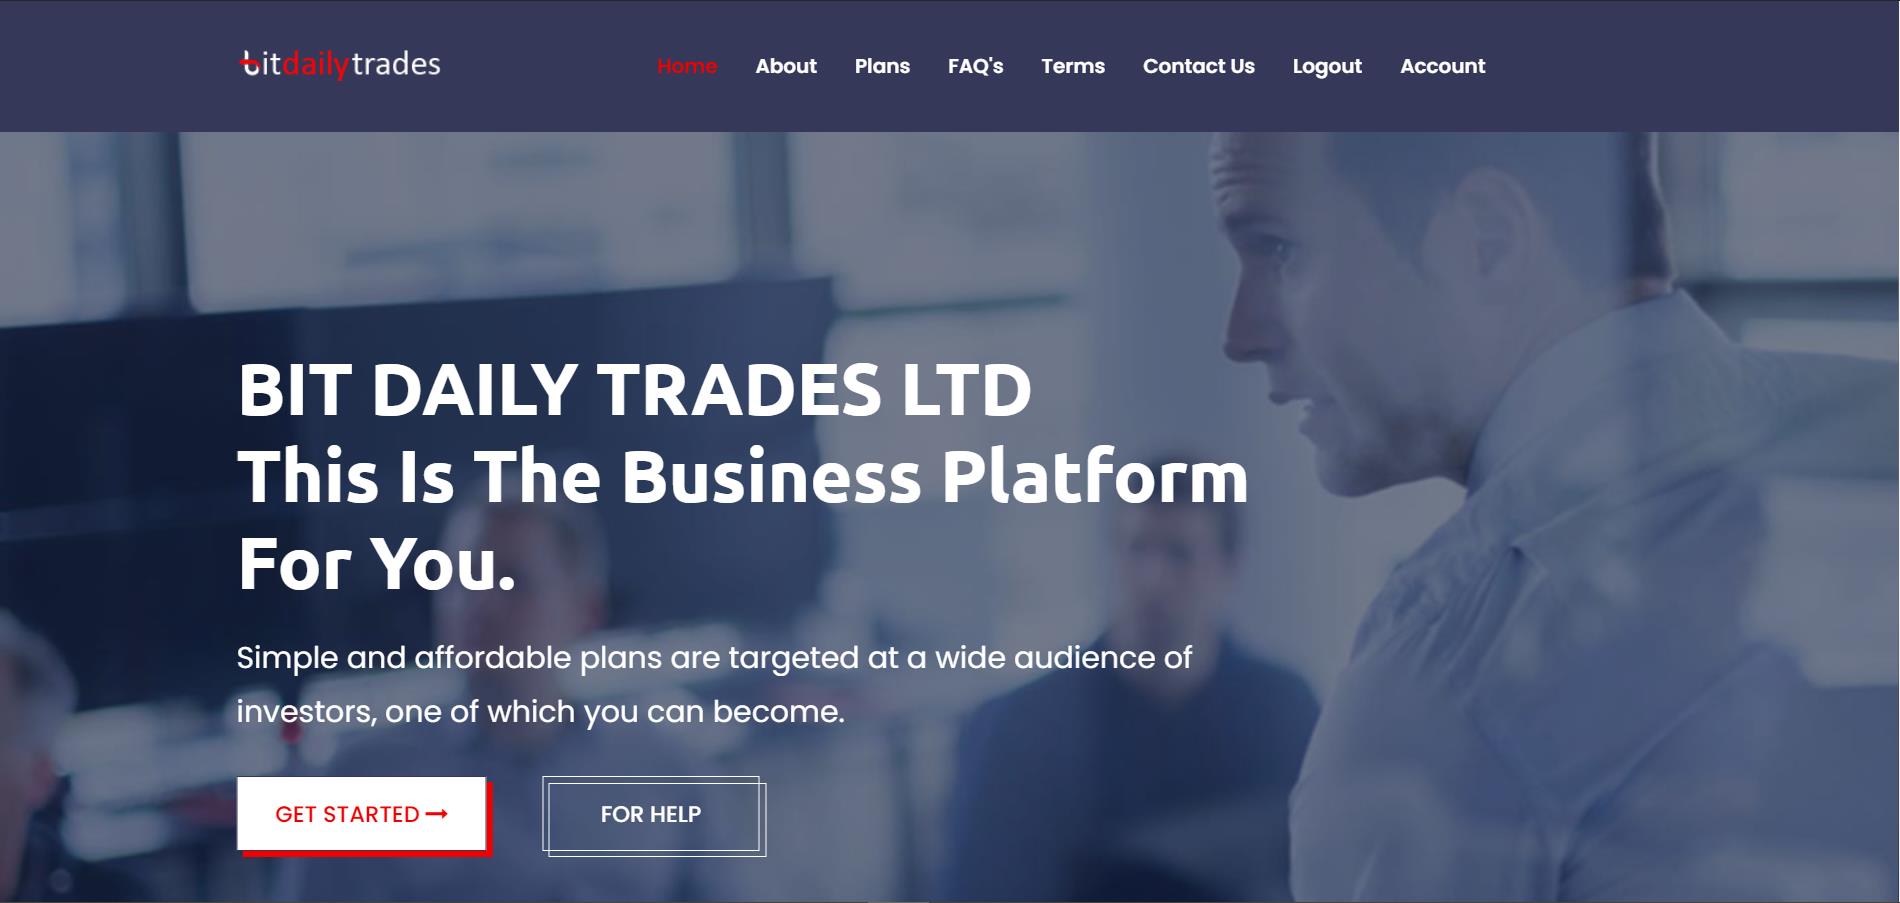 Bit Daily Trades Ltd